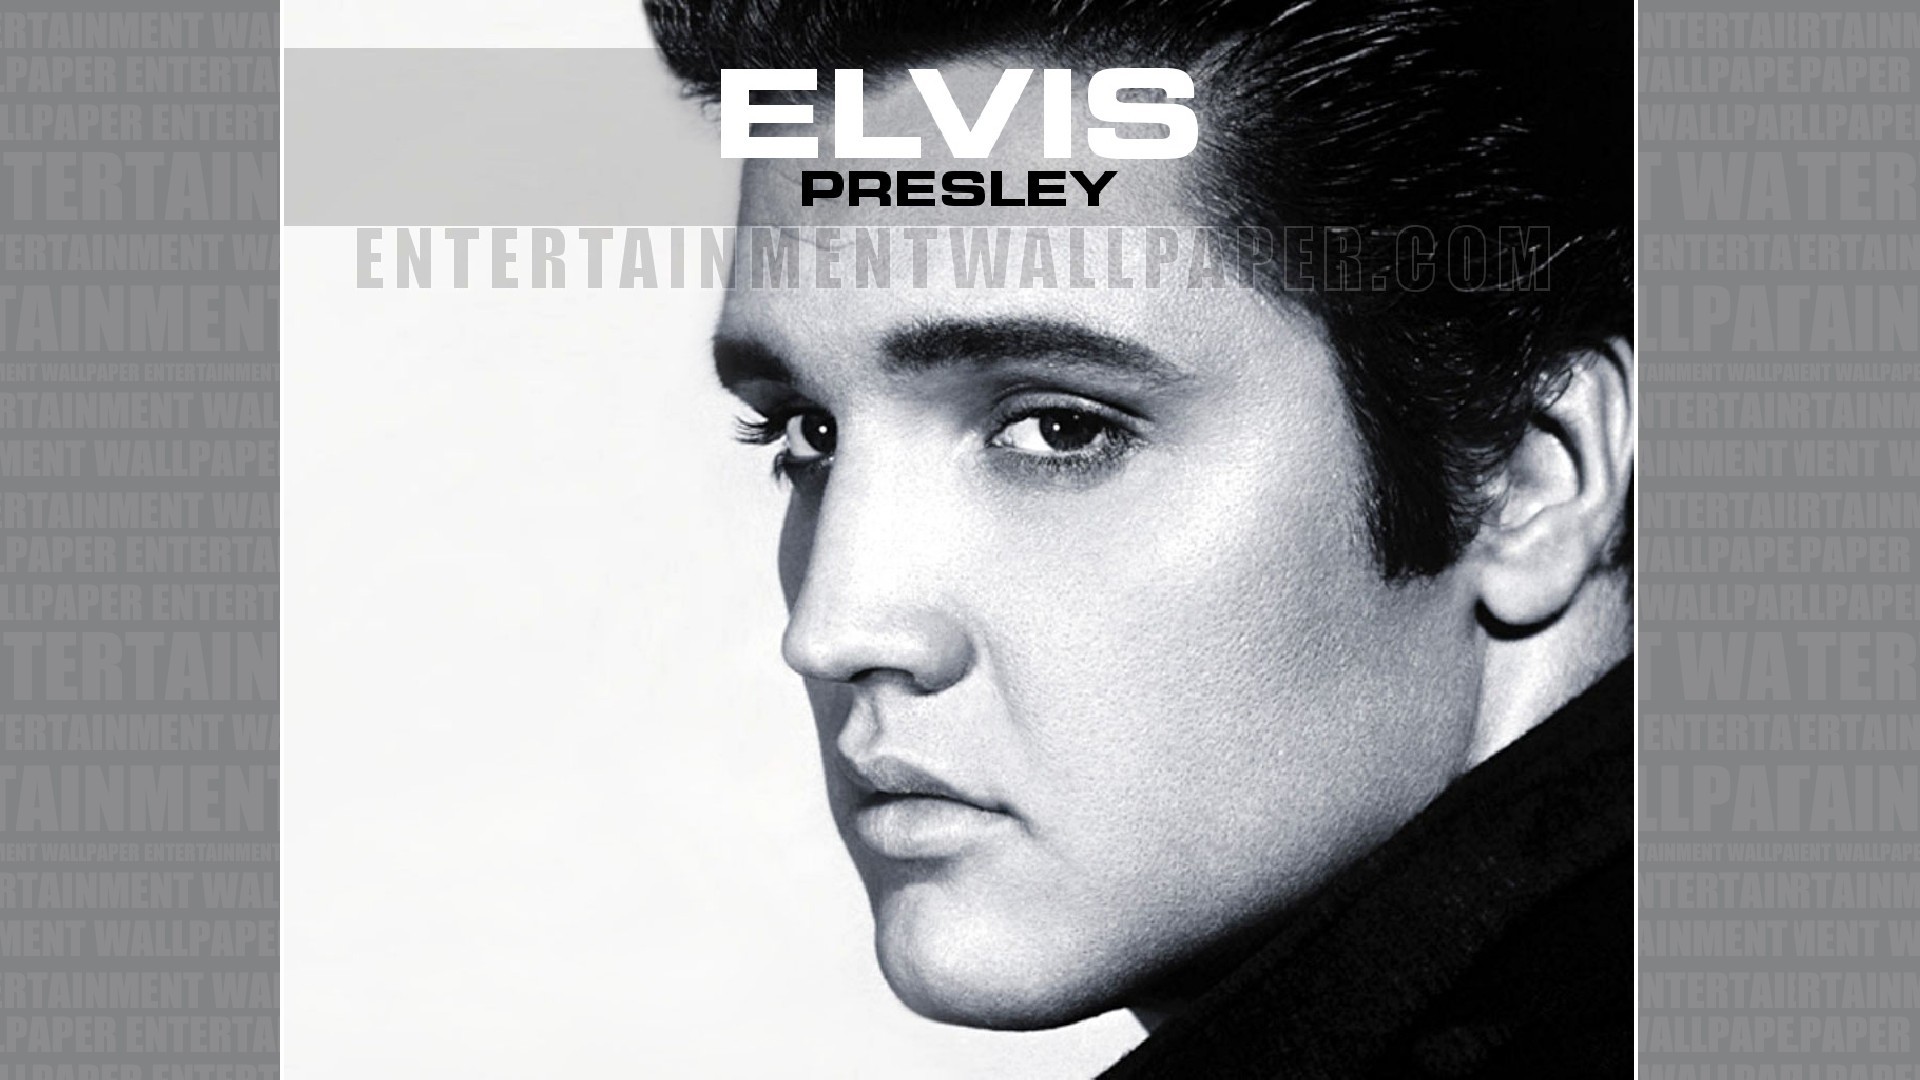 1920x1080 Elvis Presley Wallpaper - Original size, download now.